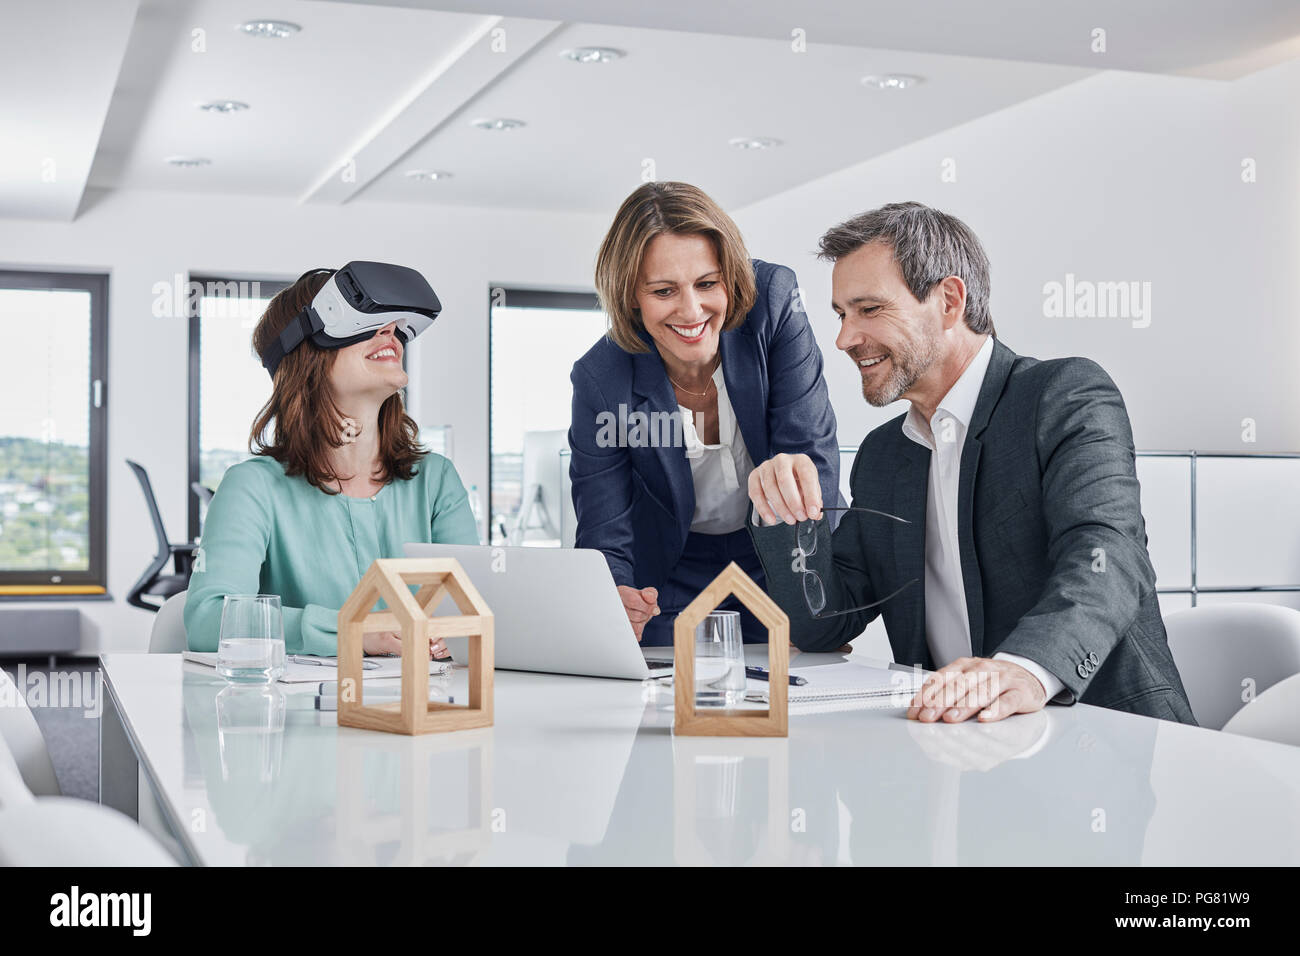 La gente di affari avente una riunione in ufficio con occhiali VR, laptop e modelli architettonici Foto Stock